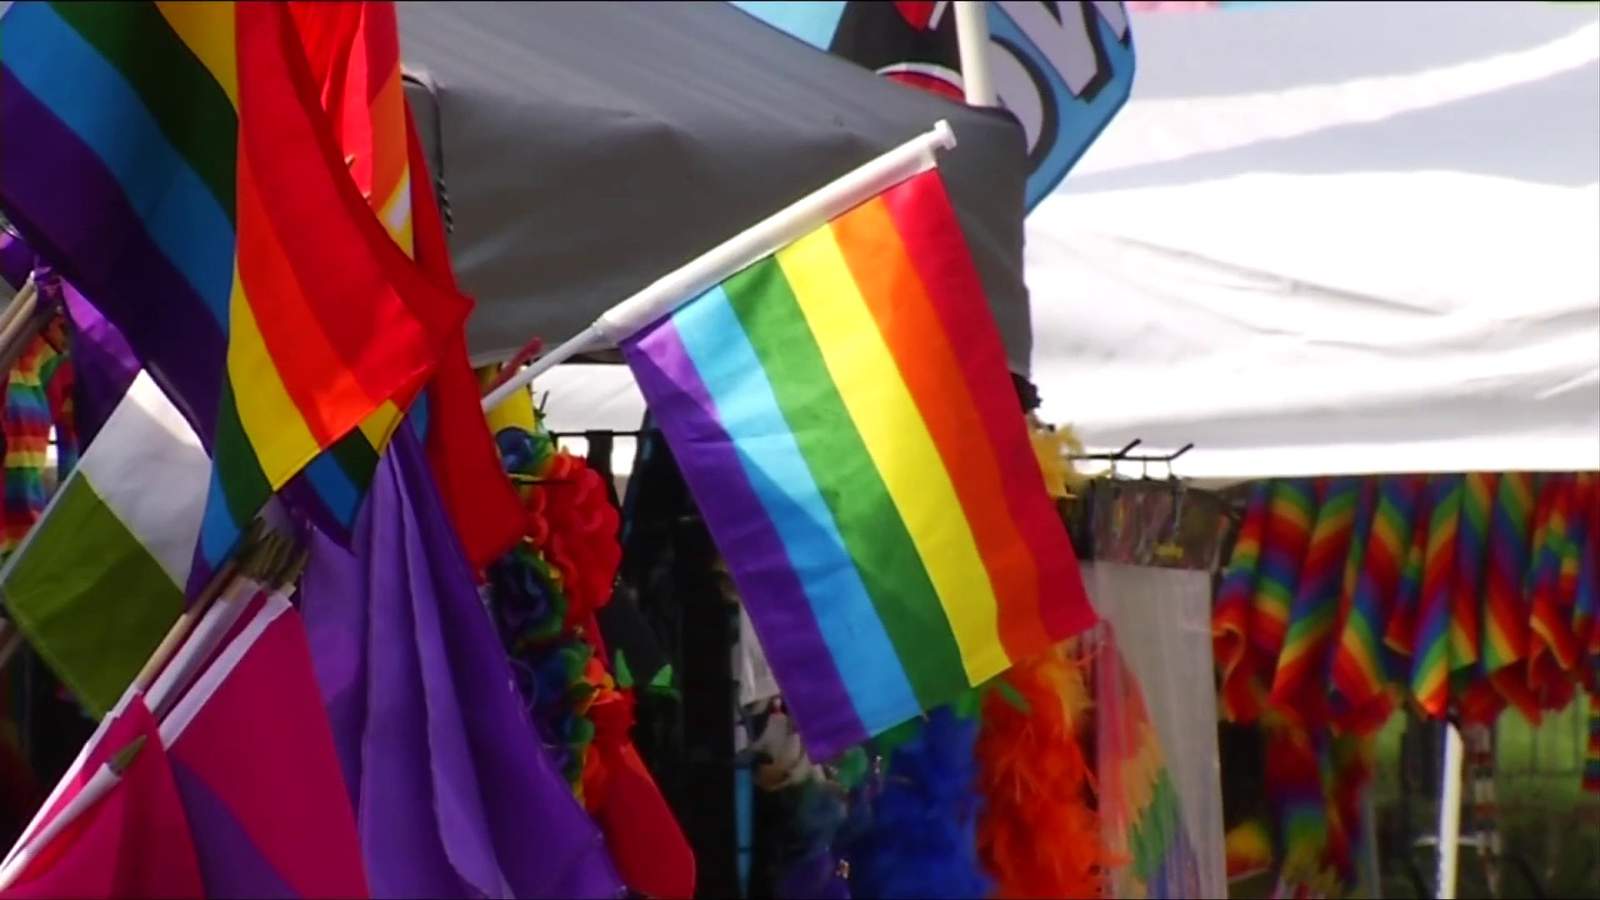 Roanoke LGBTQ leaders celebrate Supreme Court decision